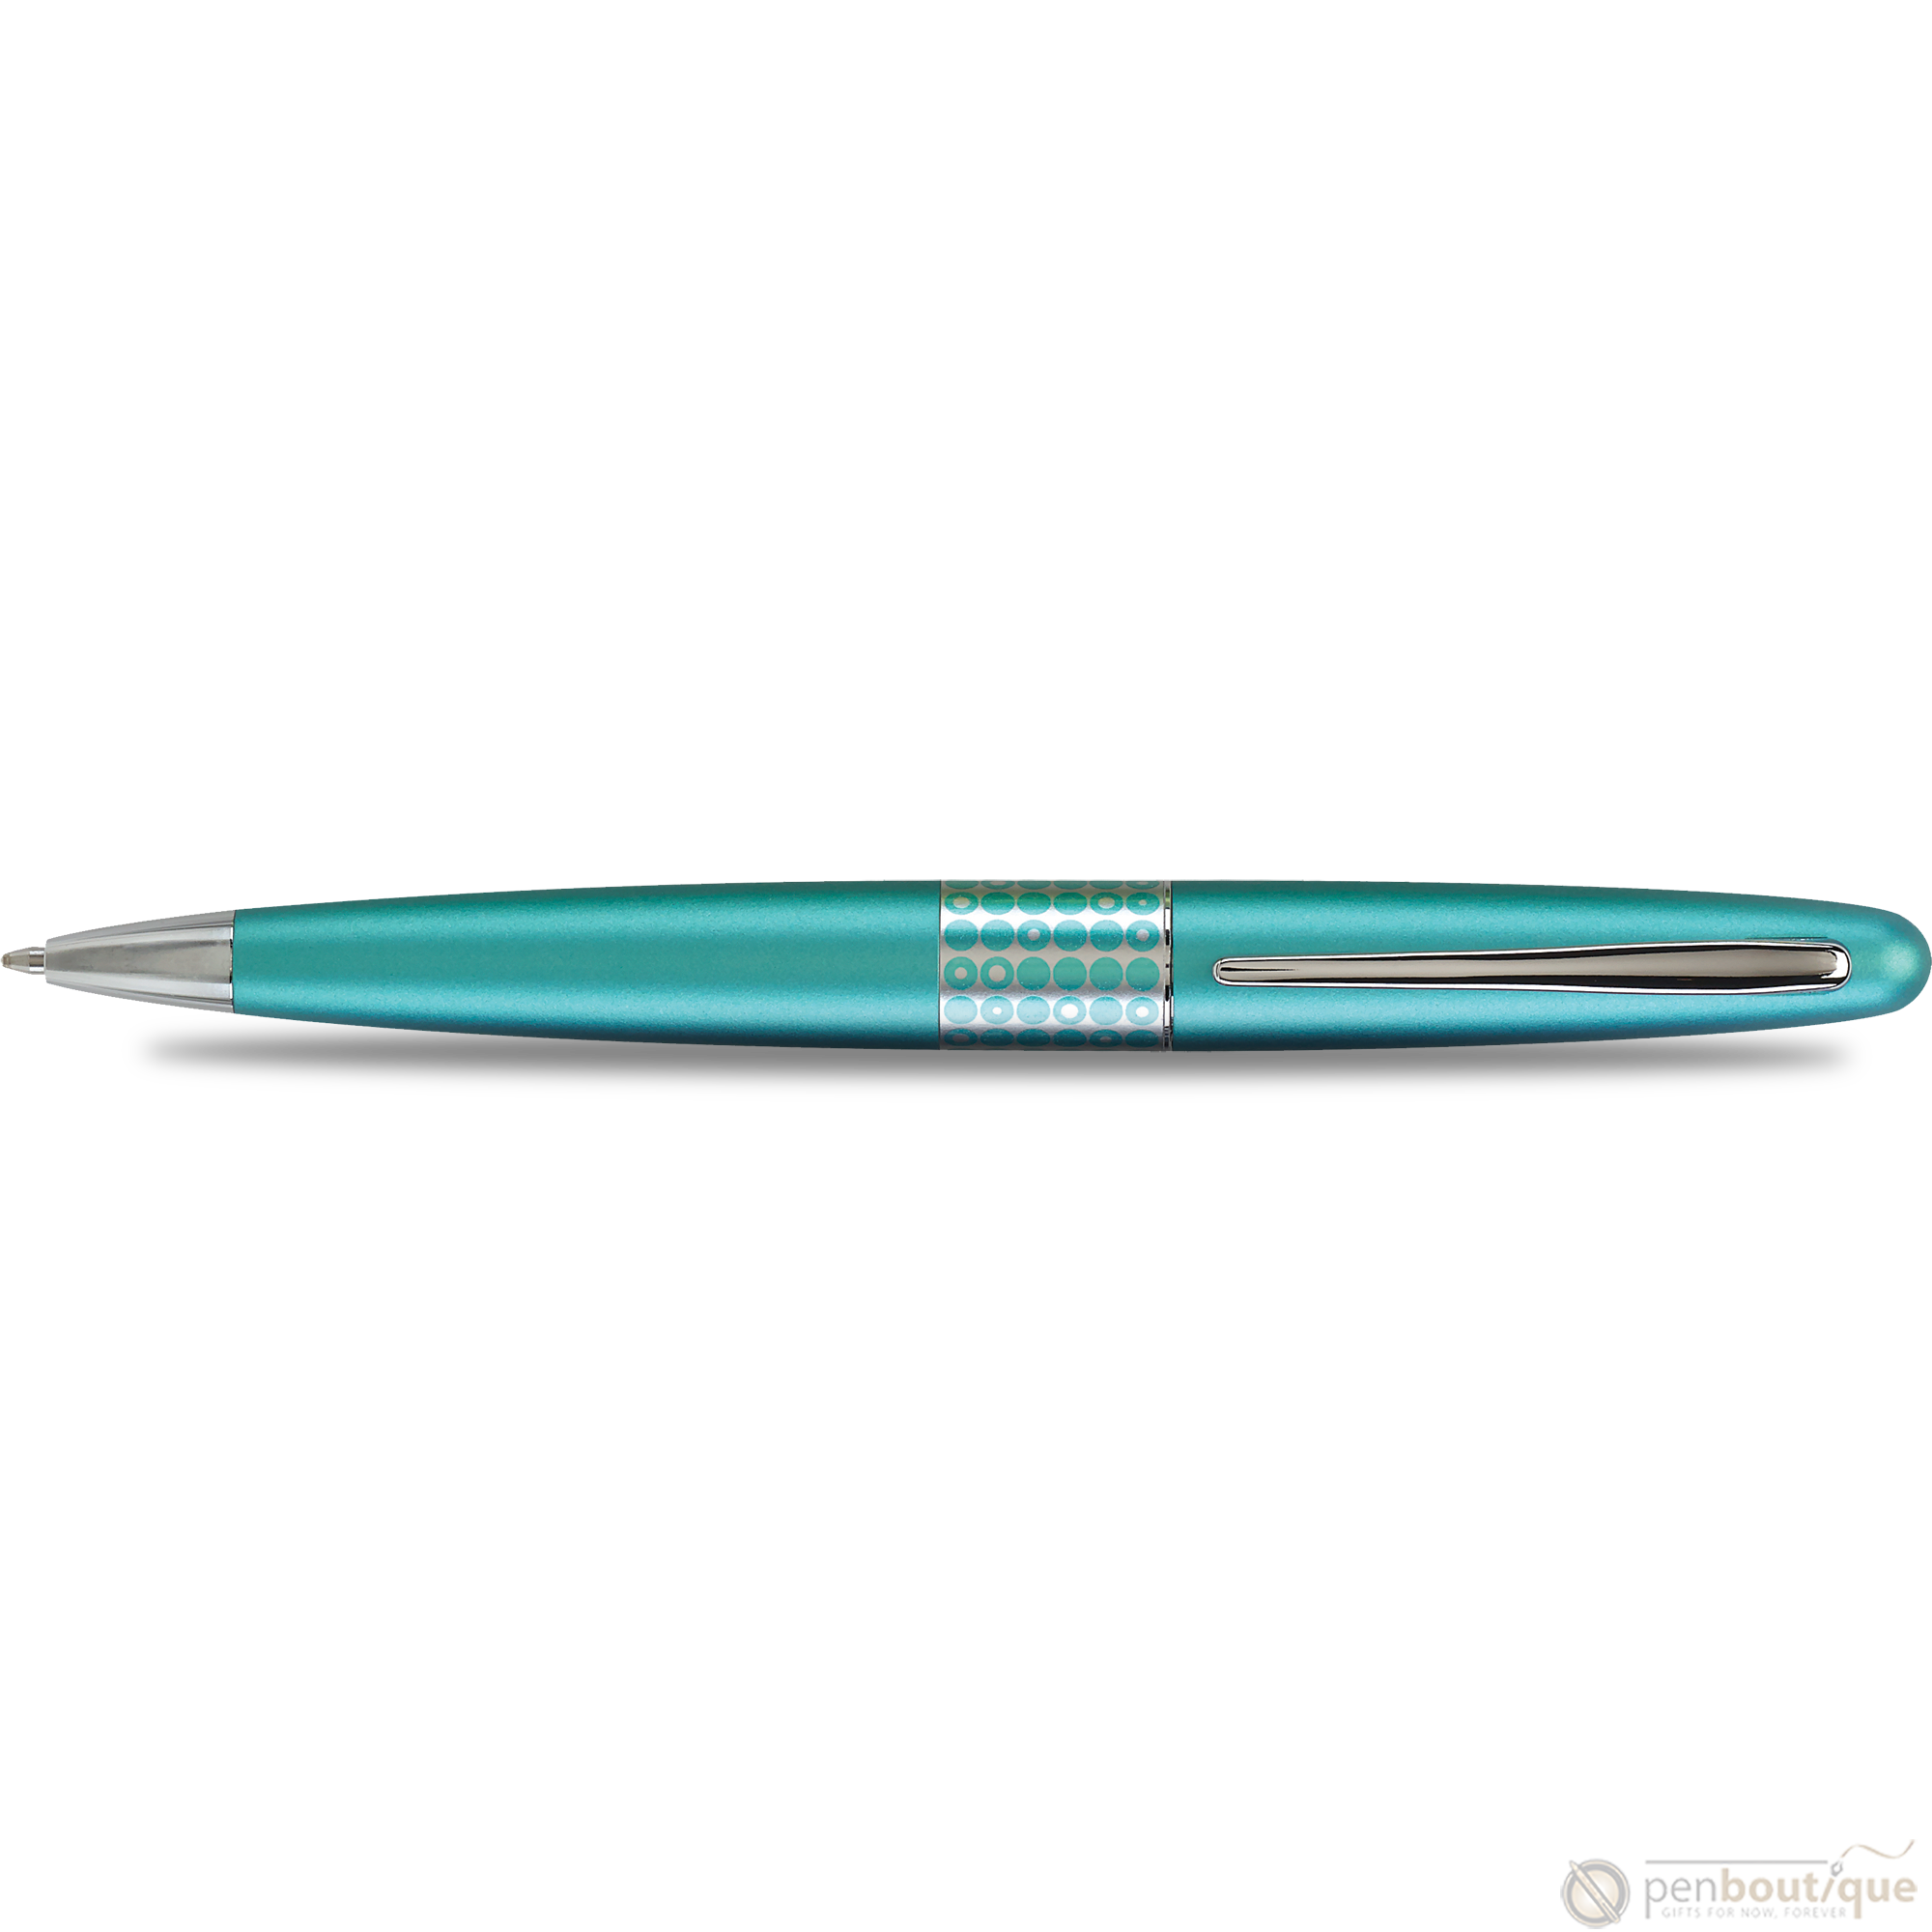 Pilot Ballpoint Pen - MR Collection - Retro Pop - Turquoise-Pen Boutique Ltd